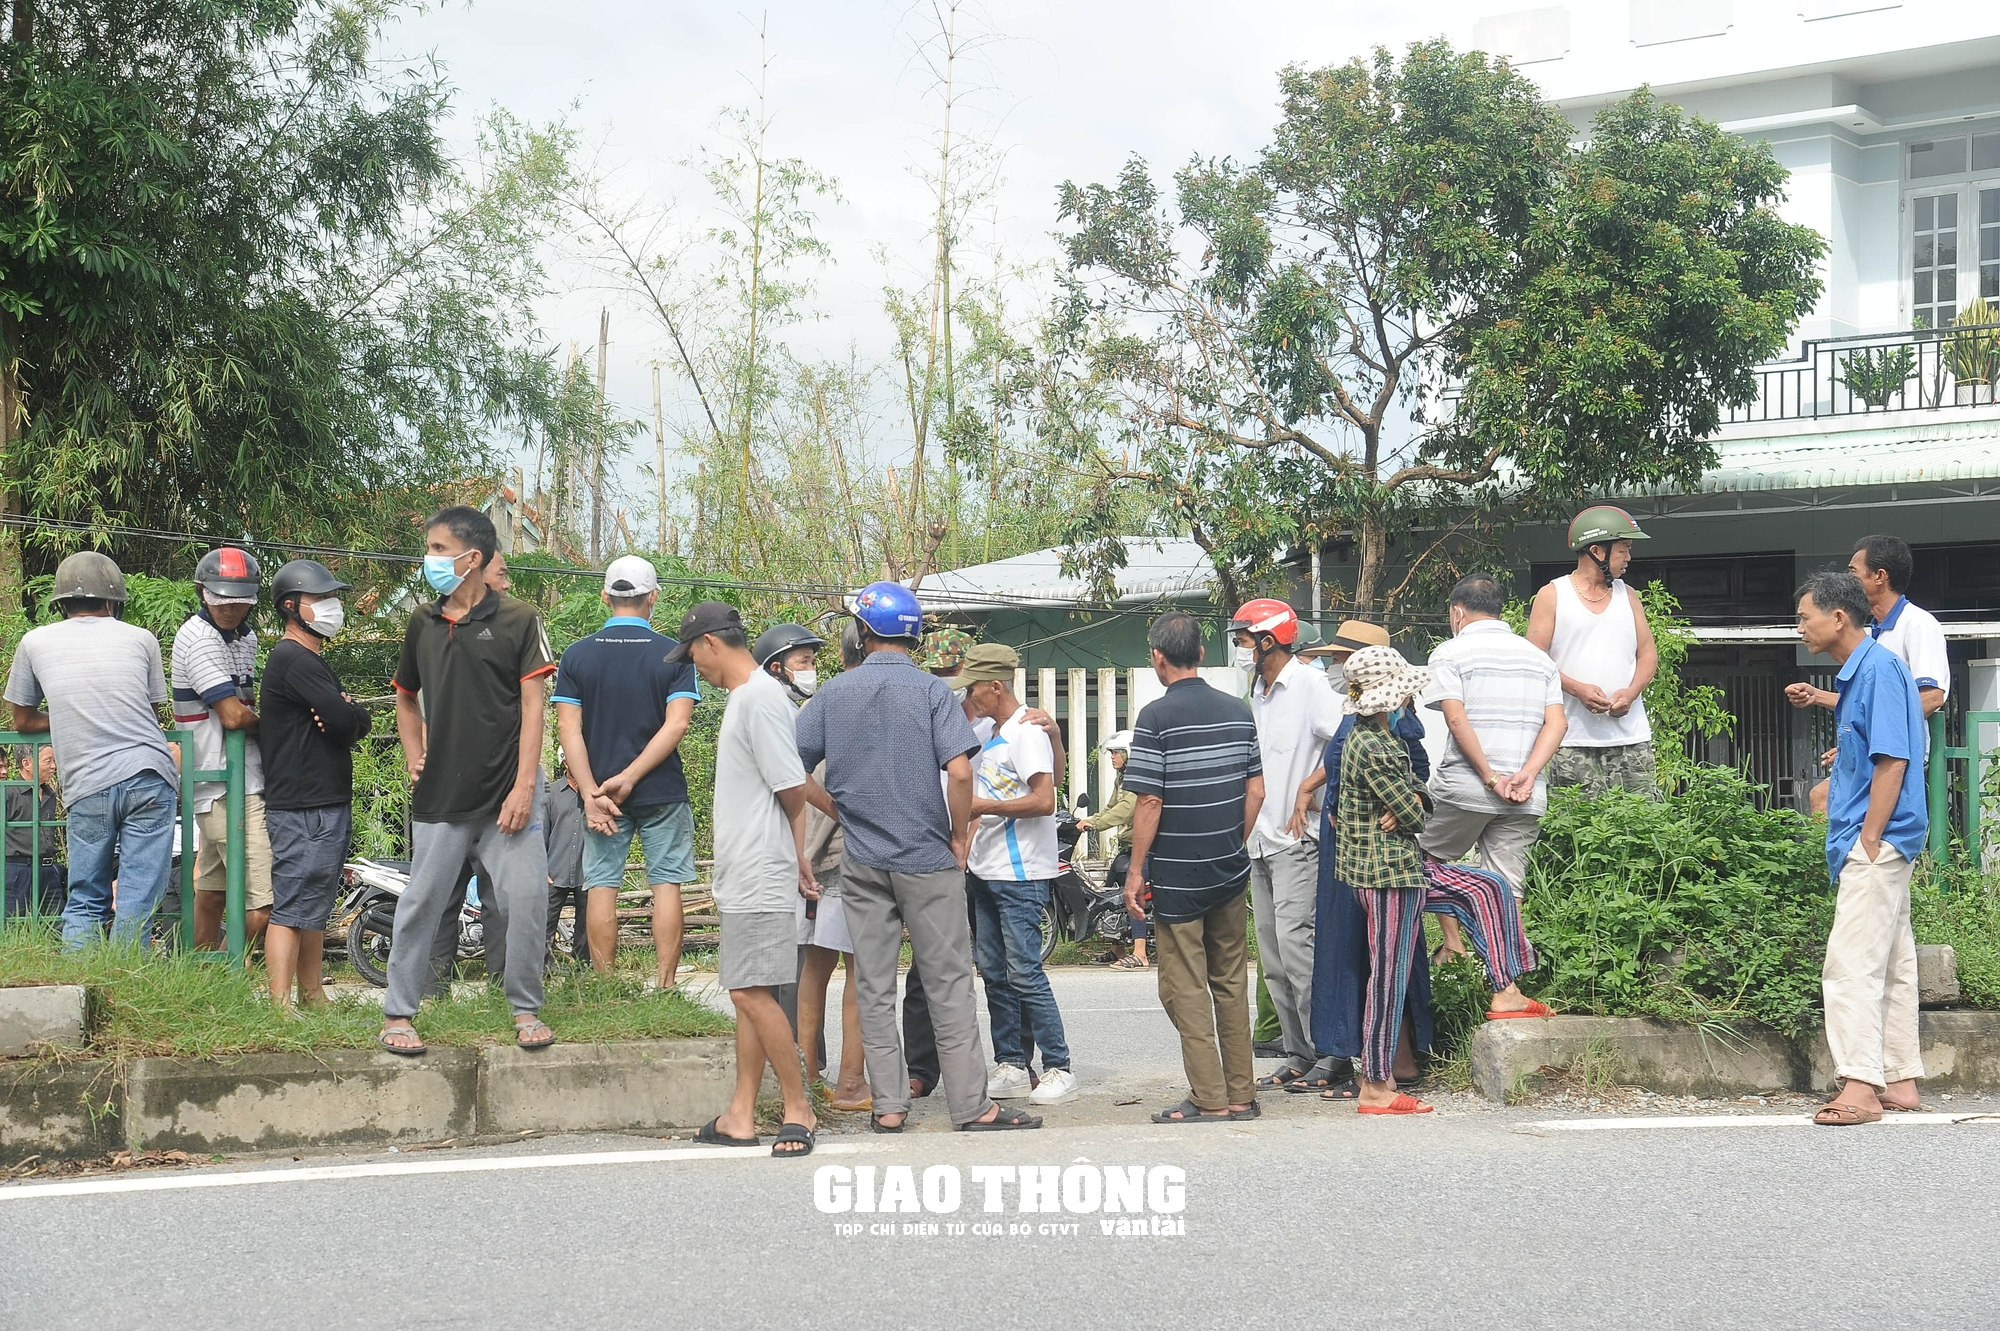 Người dân cản trở, việc đóng lối tự mở trên QL1 qua Quảng Nam bất thành - Ảnh 1.